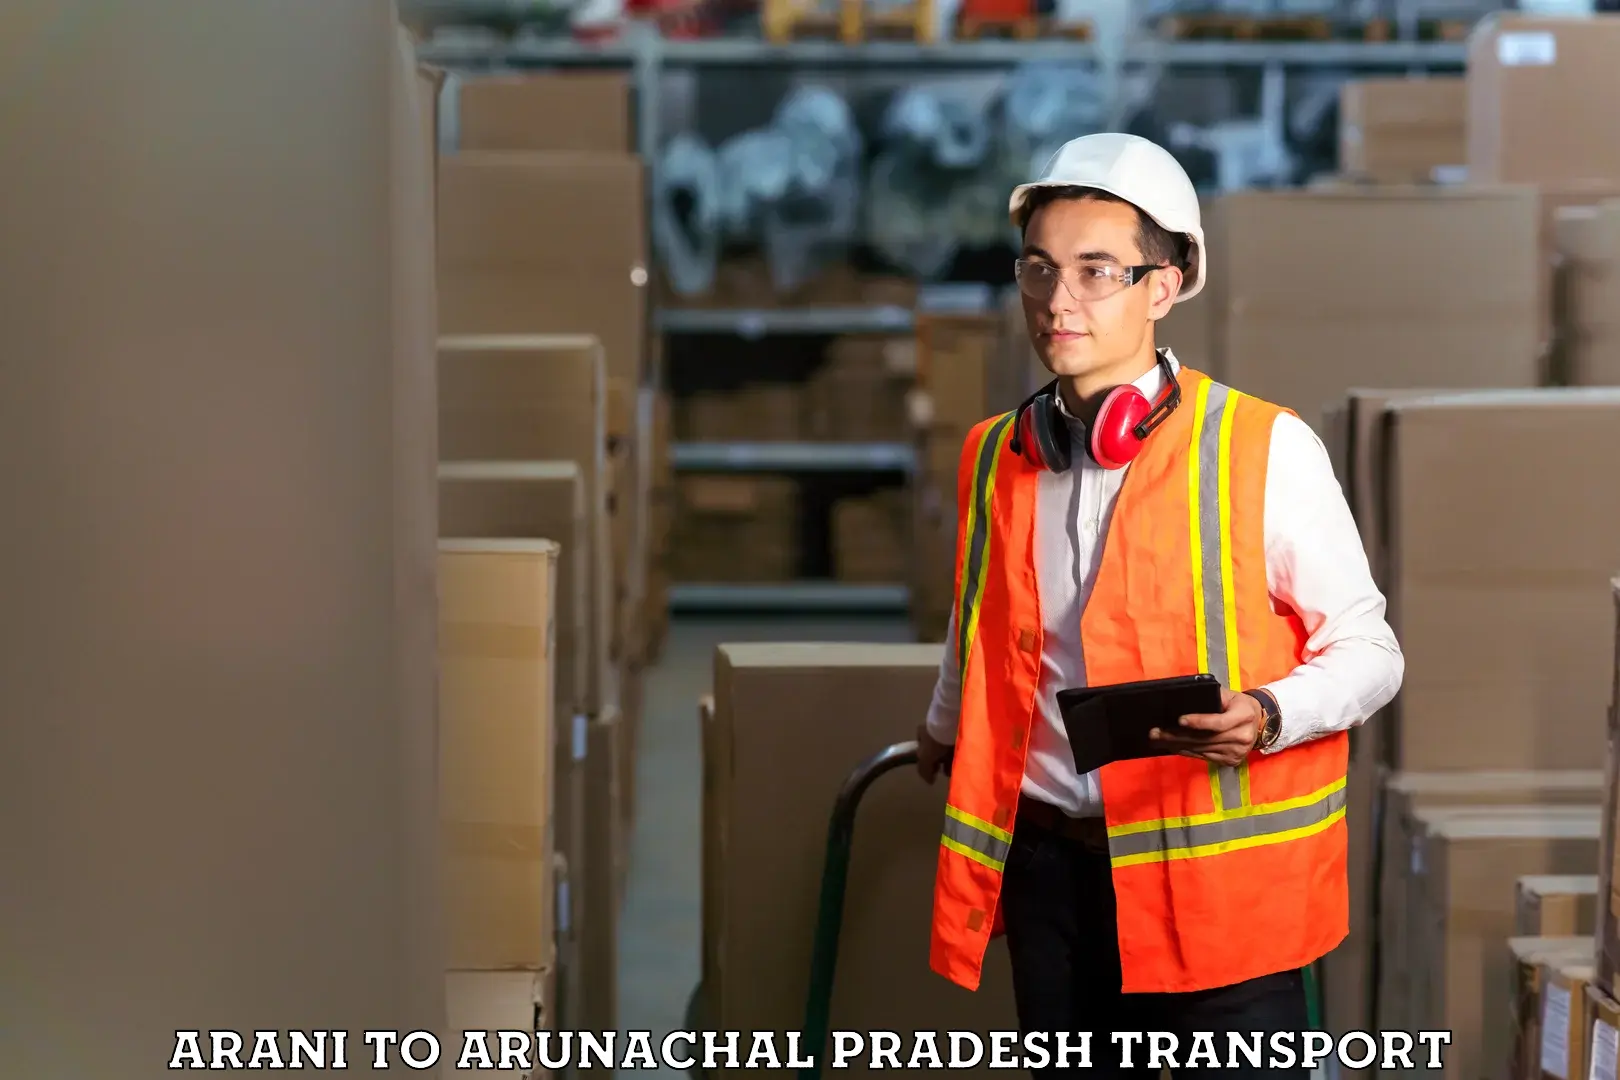 Furniture transport service Arani to Arunachal Pradesh